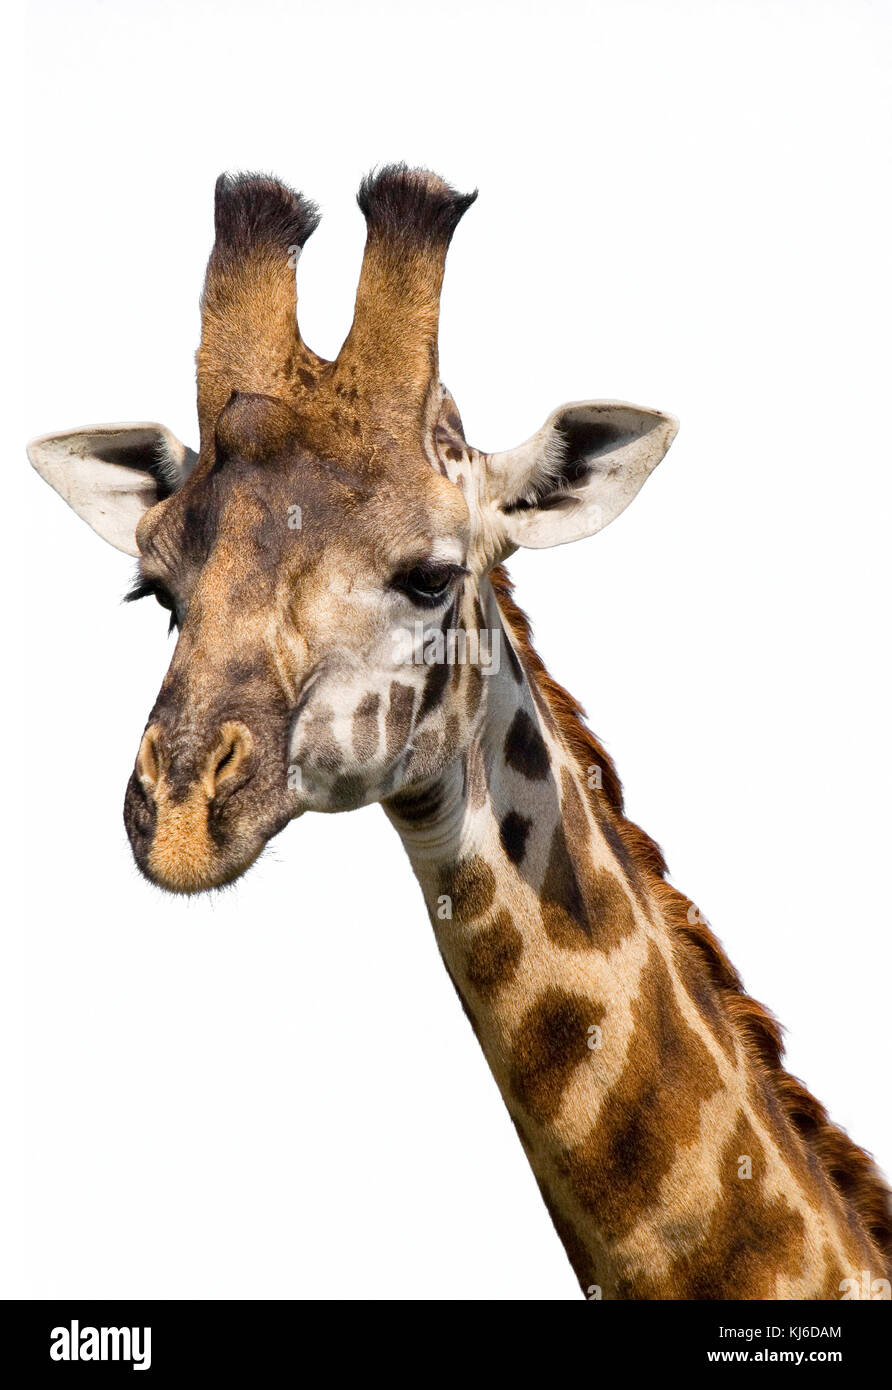 Masai jirafa (Giraffa camelopardalis tippelskirchi) retrato, aislado sobre fondo blanco. Foto de stock